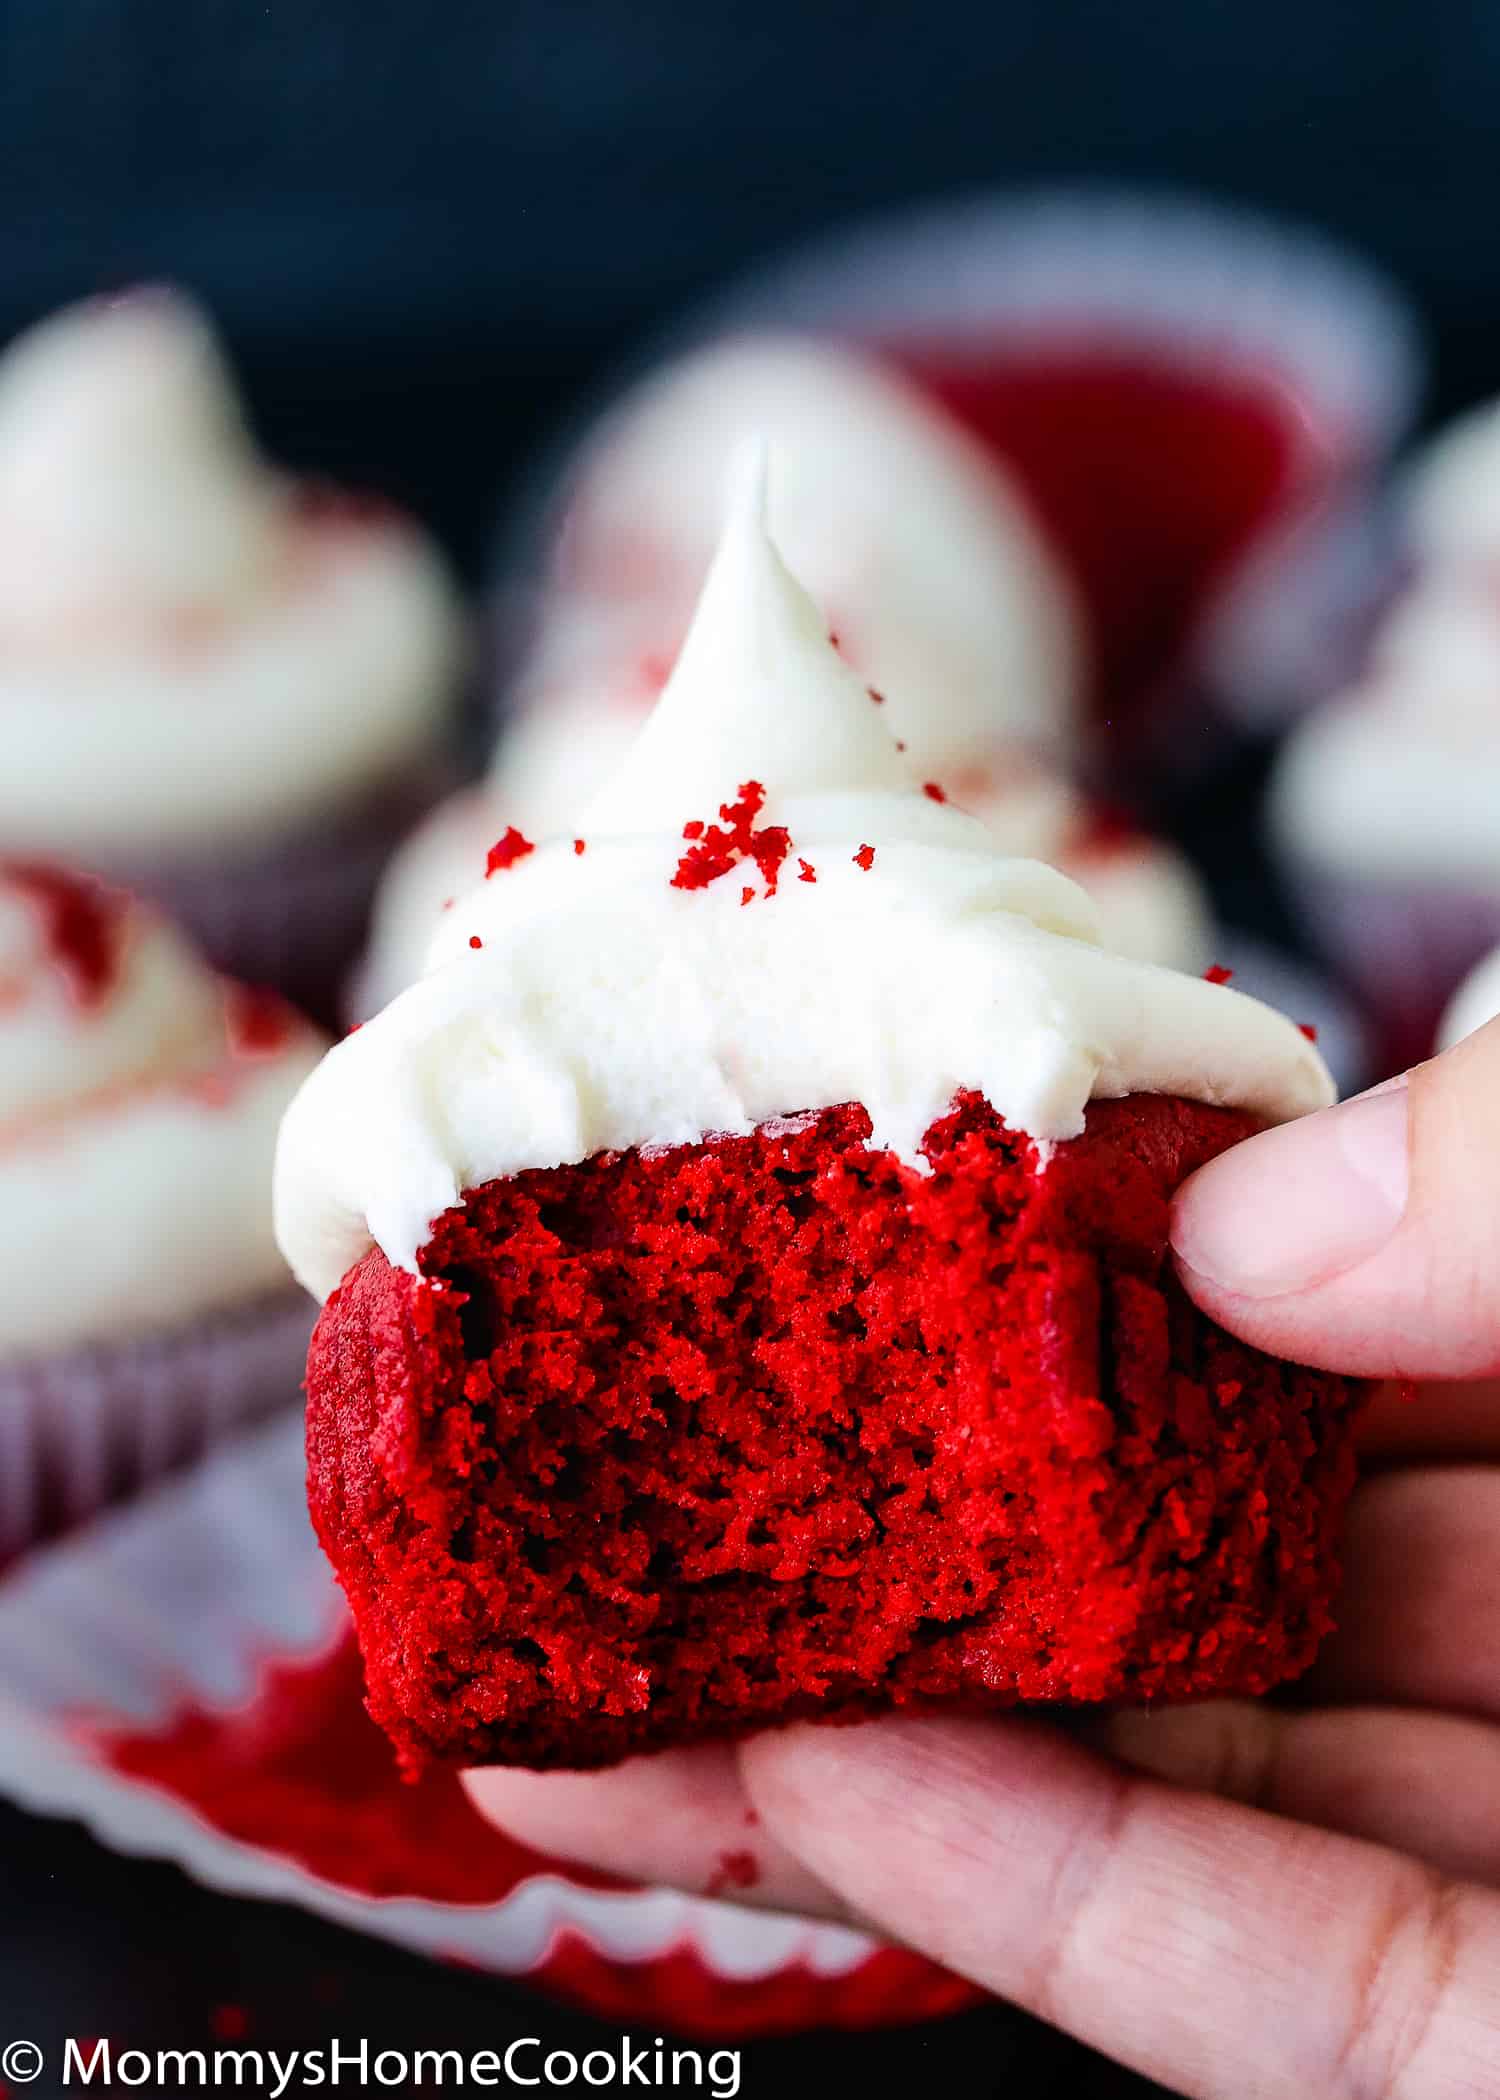 bitten eggless red velvet cupcakes showing fluffy inside texture